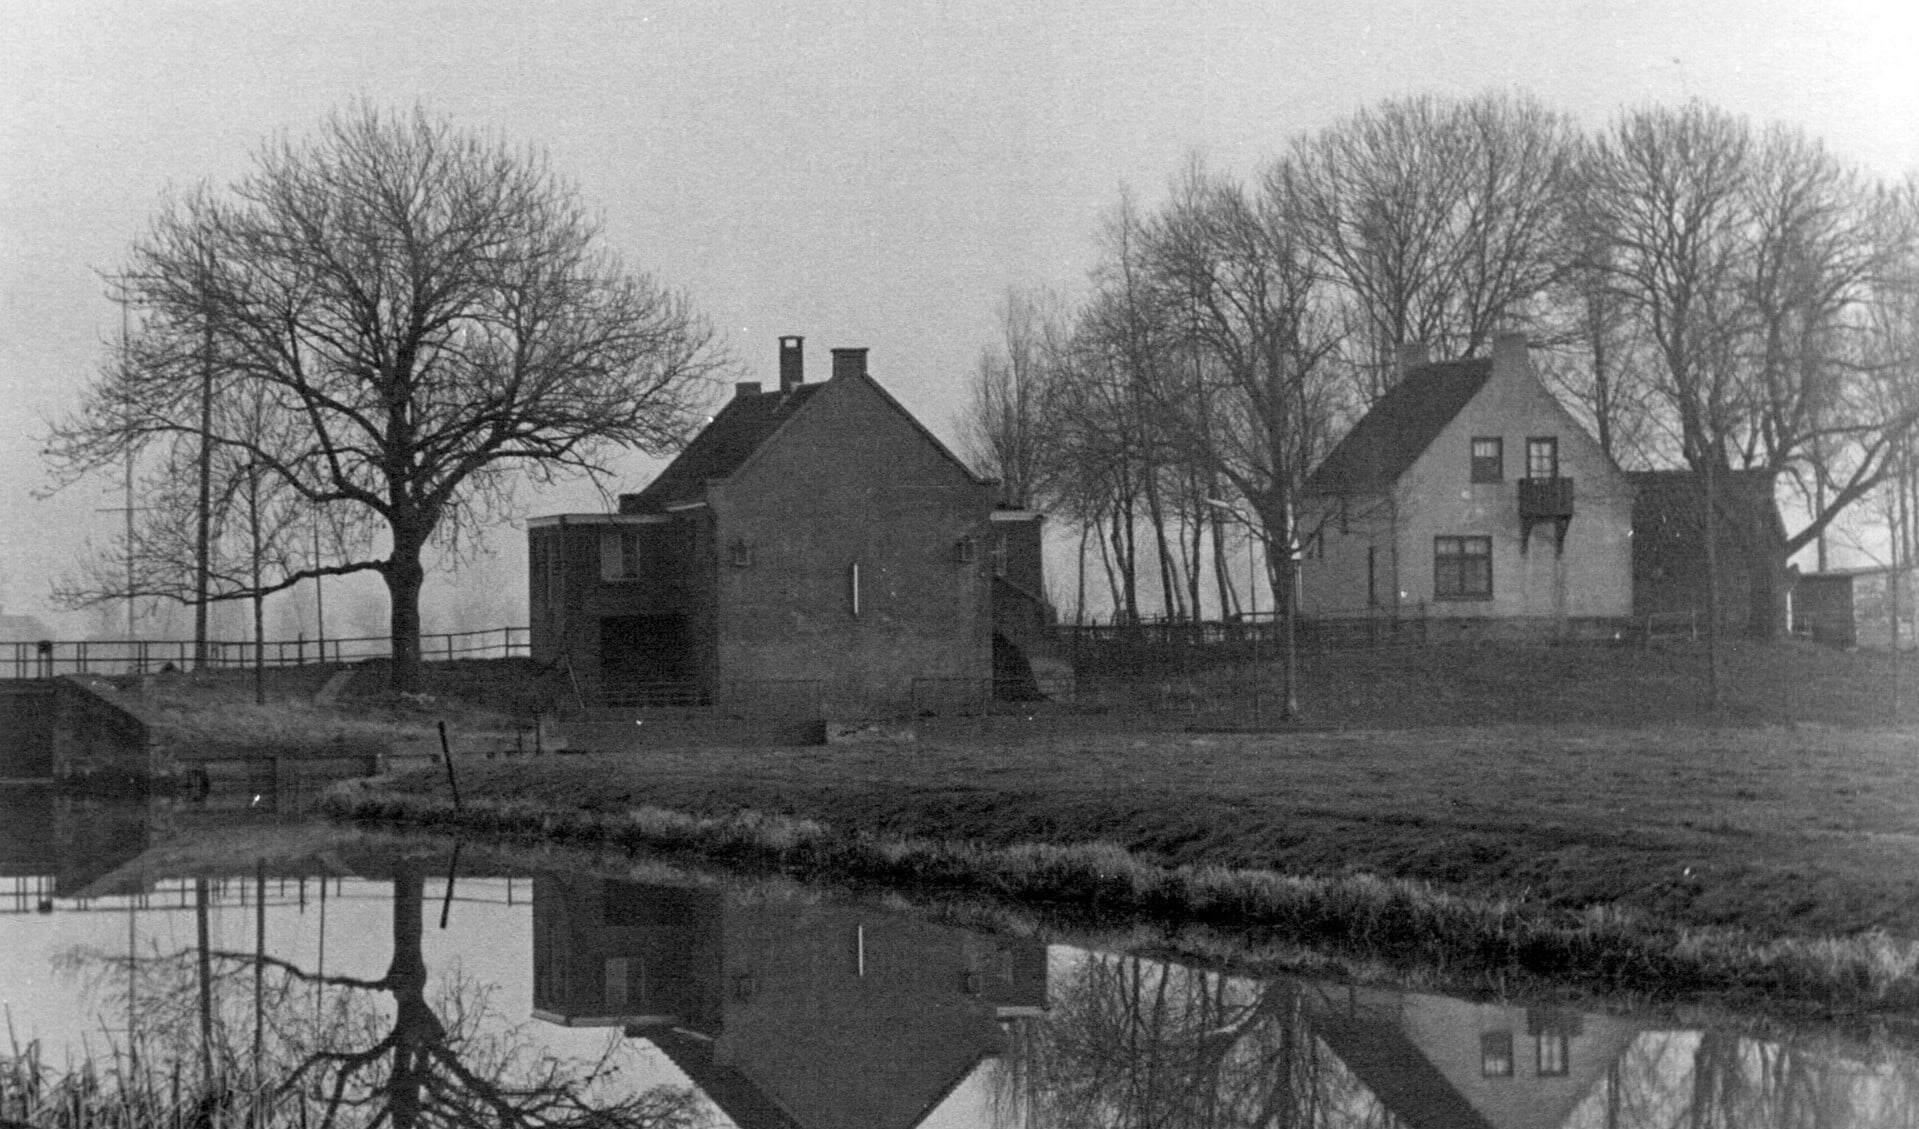 Op de plek rechts waar nu het witte huisje staat, stond tot 1883 de molen.